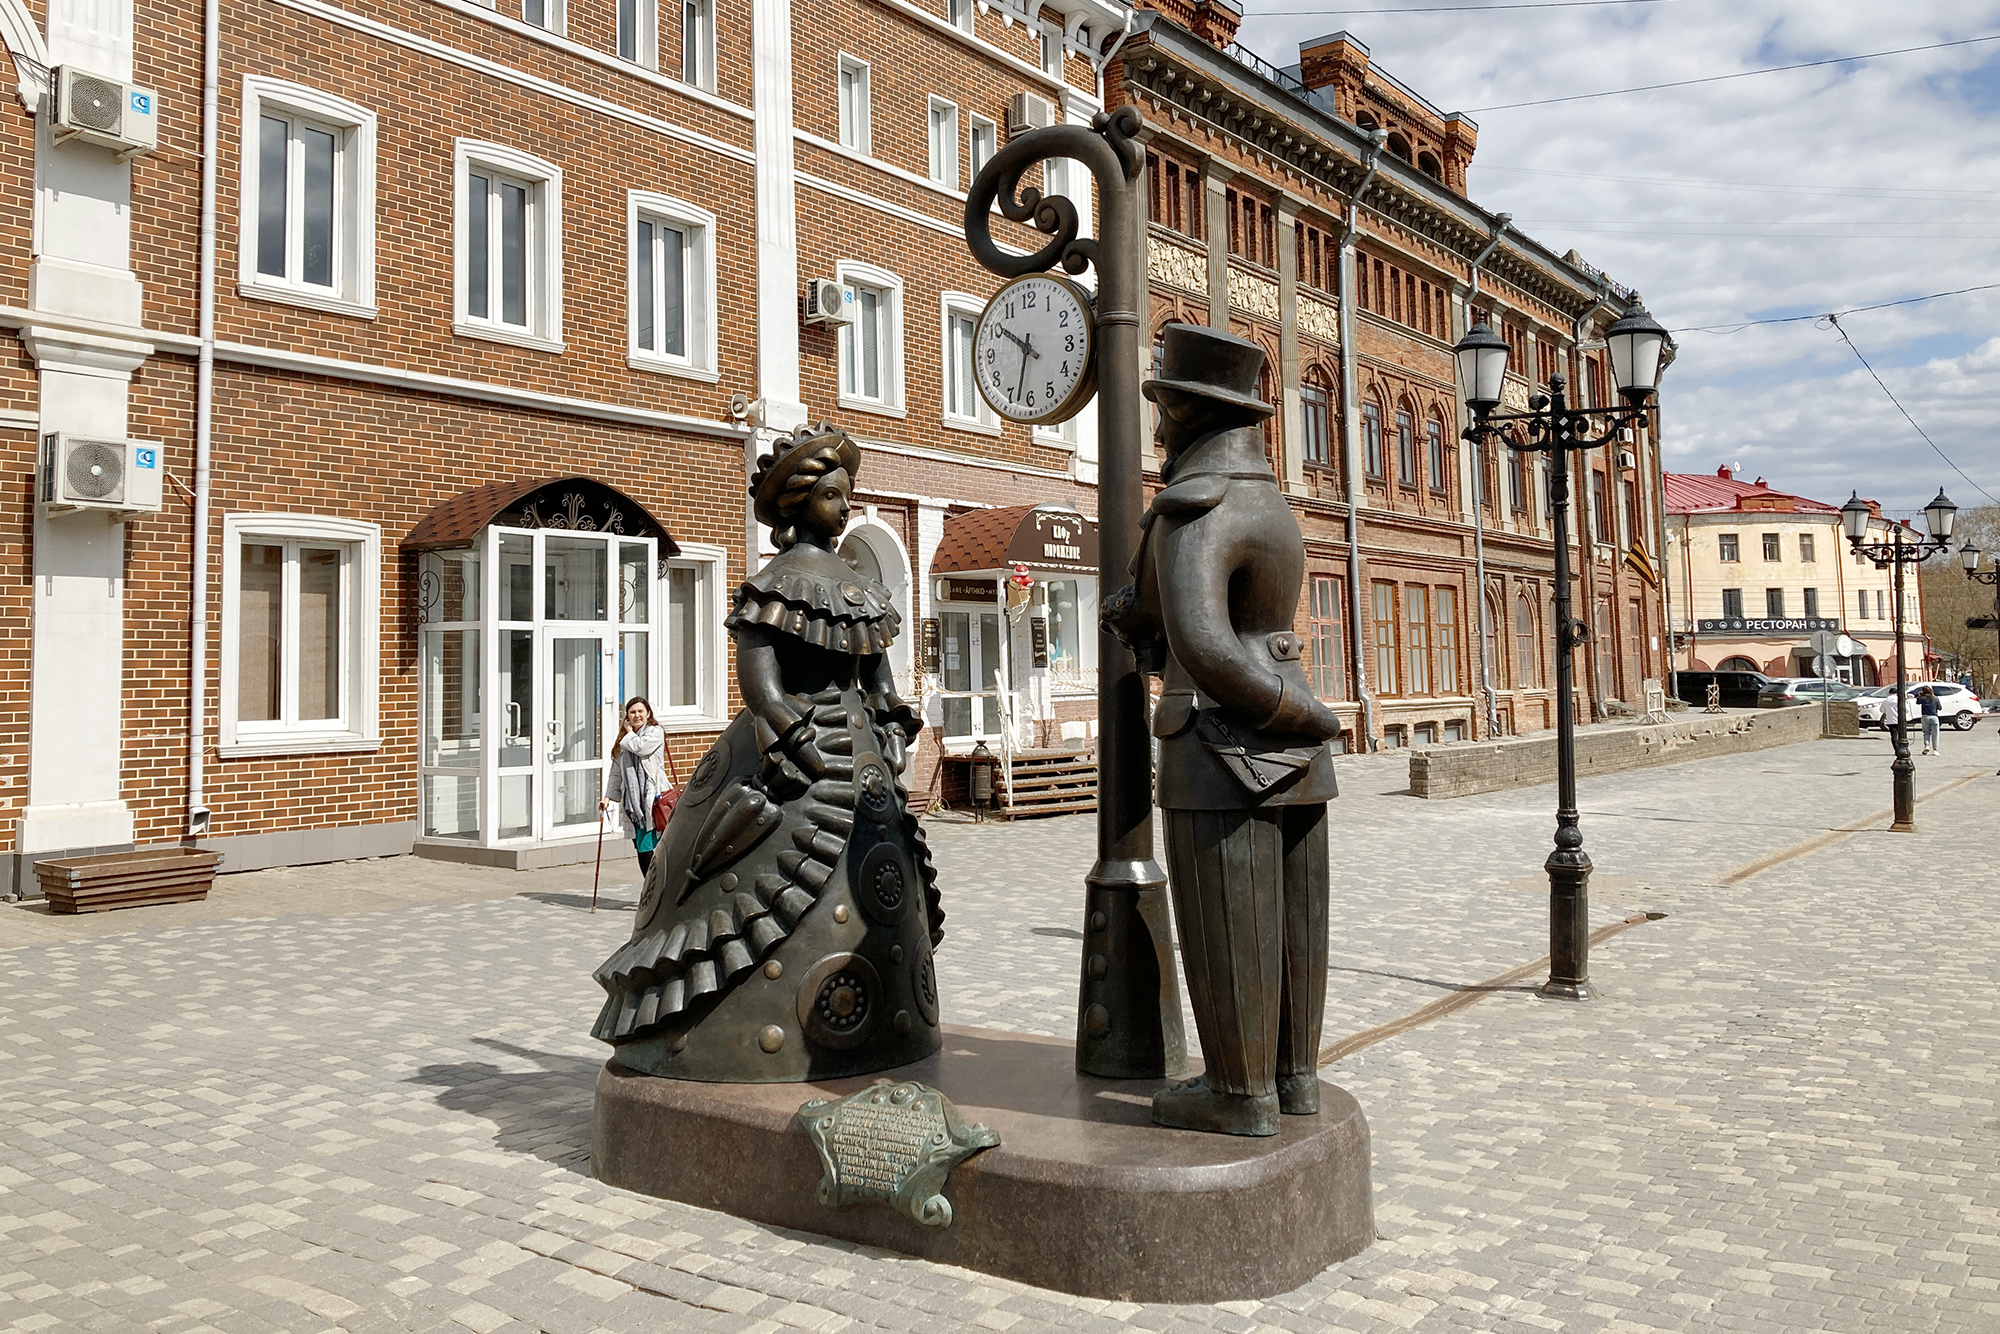 Рядом с музеями установили скульптуру «Свидание барышни и кавалера» в дымковском стиле. Часы на ней бьют каждый час